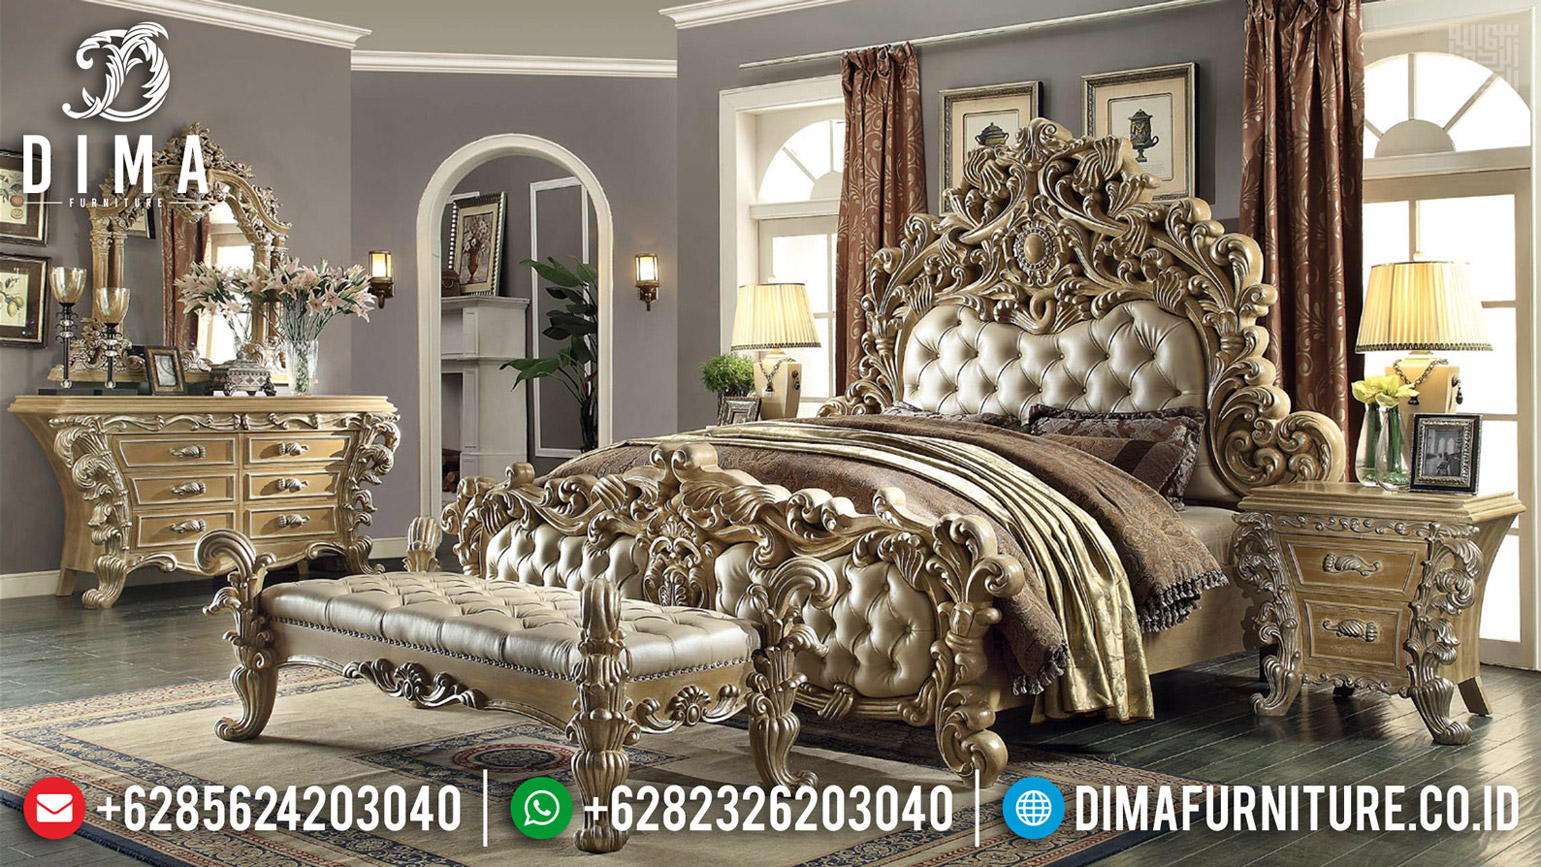 Desain Royals Luxury Kamar Set Mewah Ukiran Klasik Jepara Cantik MMJ-0603